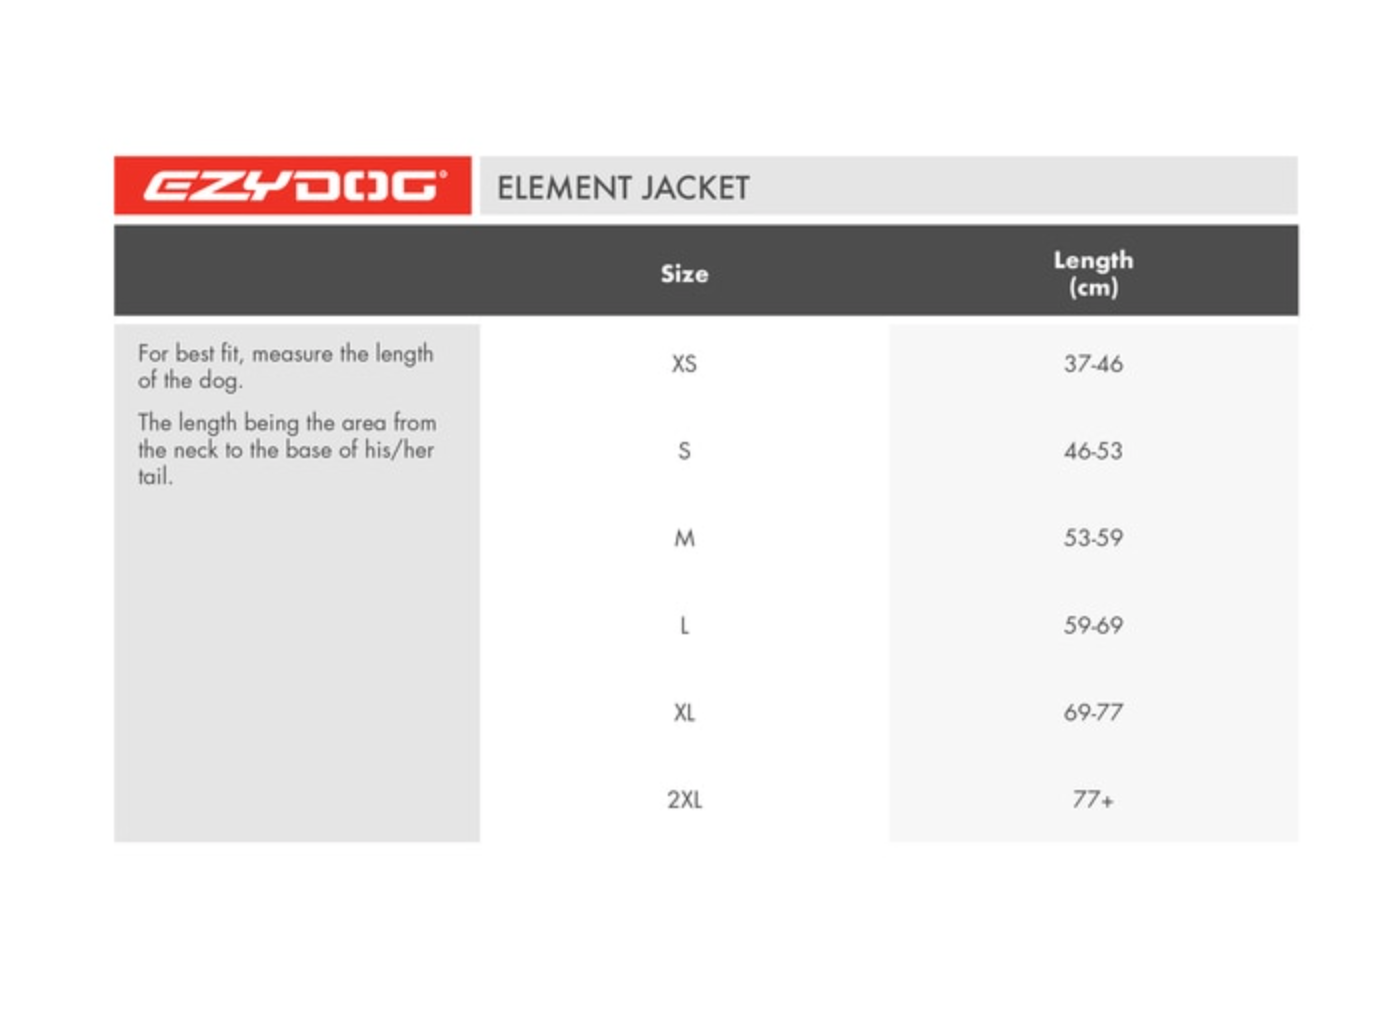 Elements Jacket | EzyDog